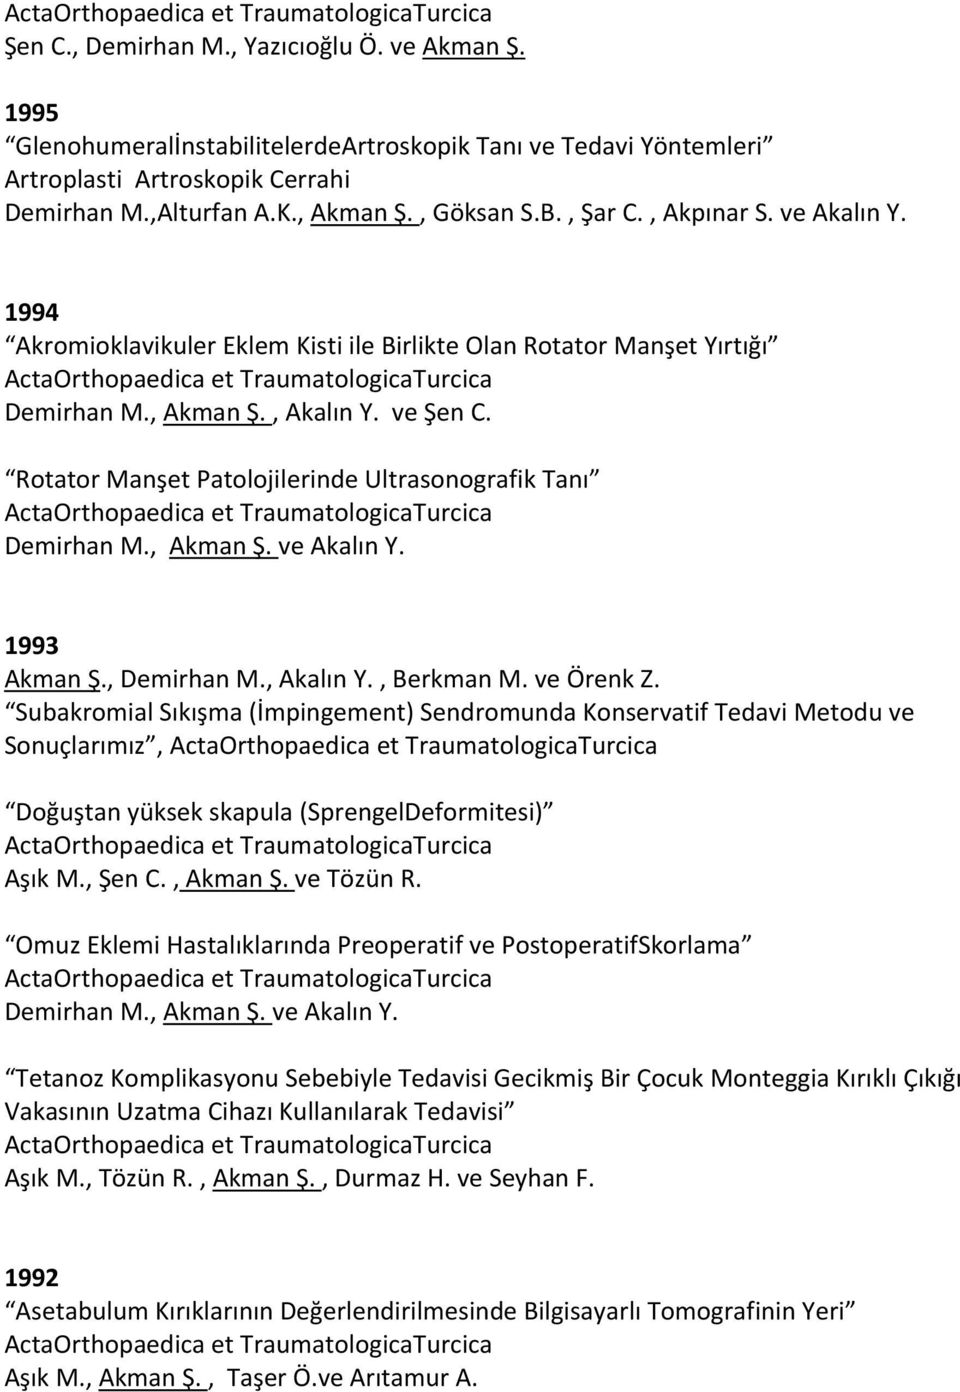 Rotator Manşet Patolojilerinde Ultrasonografik Tanı Demirhan M., Akman Ş. ve Akalın Y. 1993 Akman Ş., Demirhan M., Akalın Y., Berkman M. ve Örenk Z.